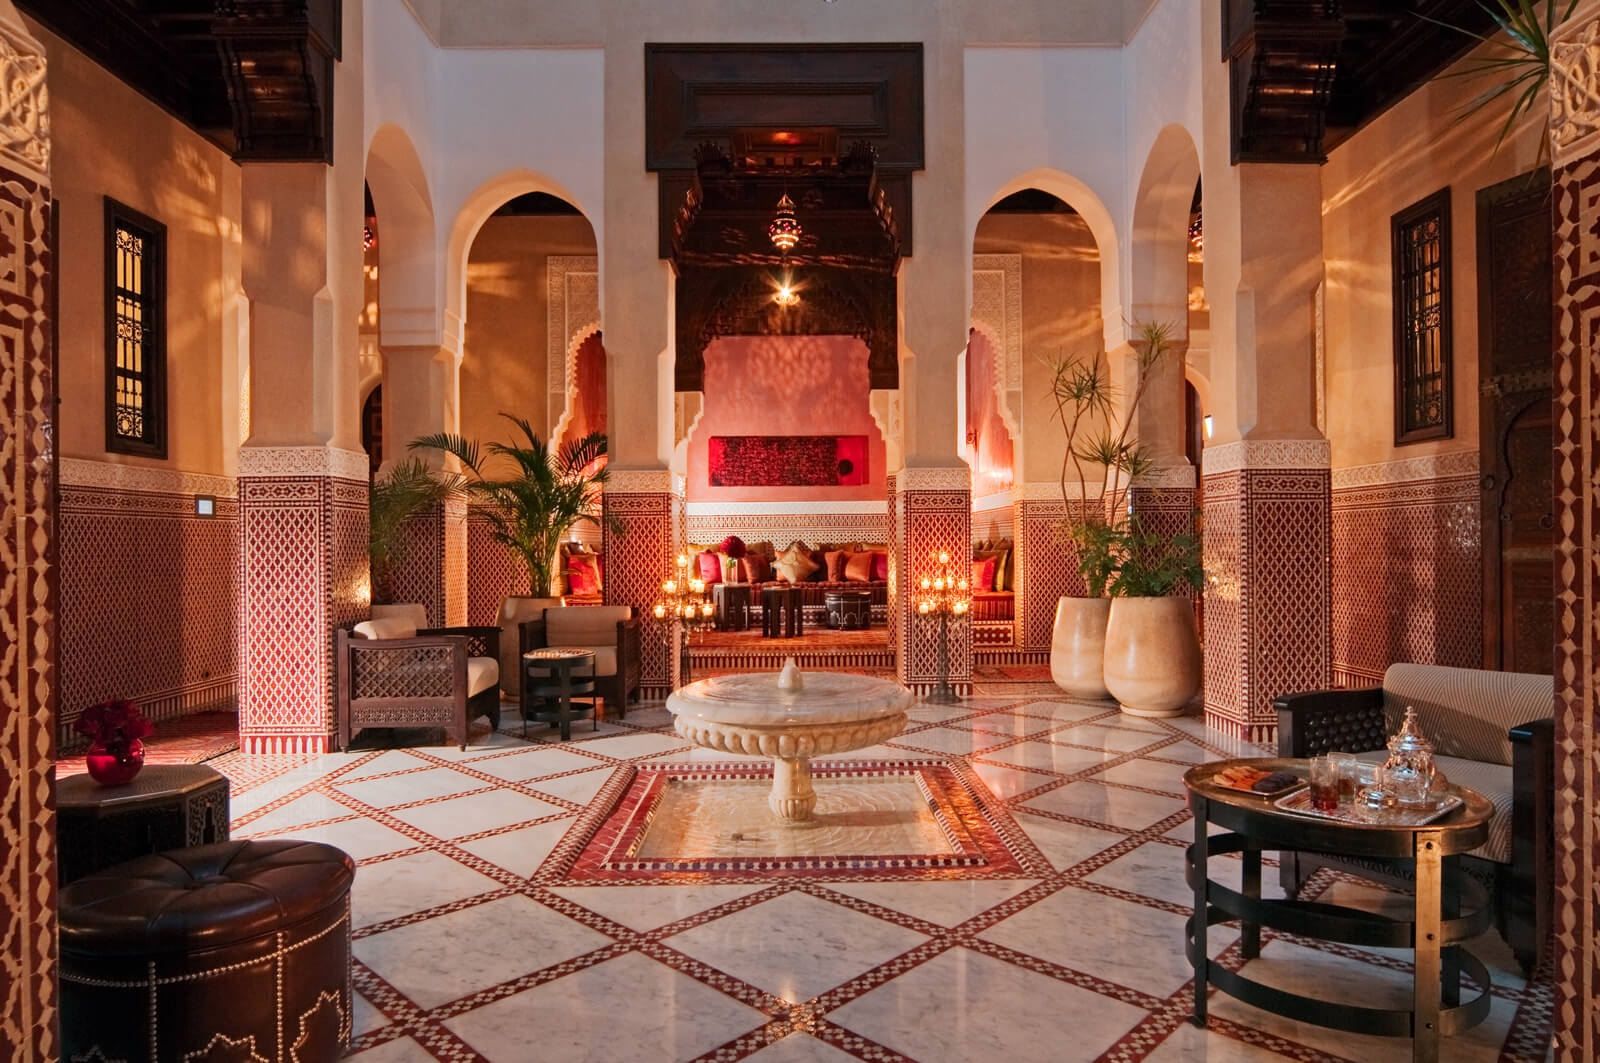 Sahara Desert Tour - Best Big City Riads of Morocco